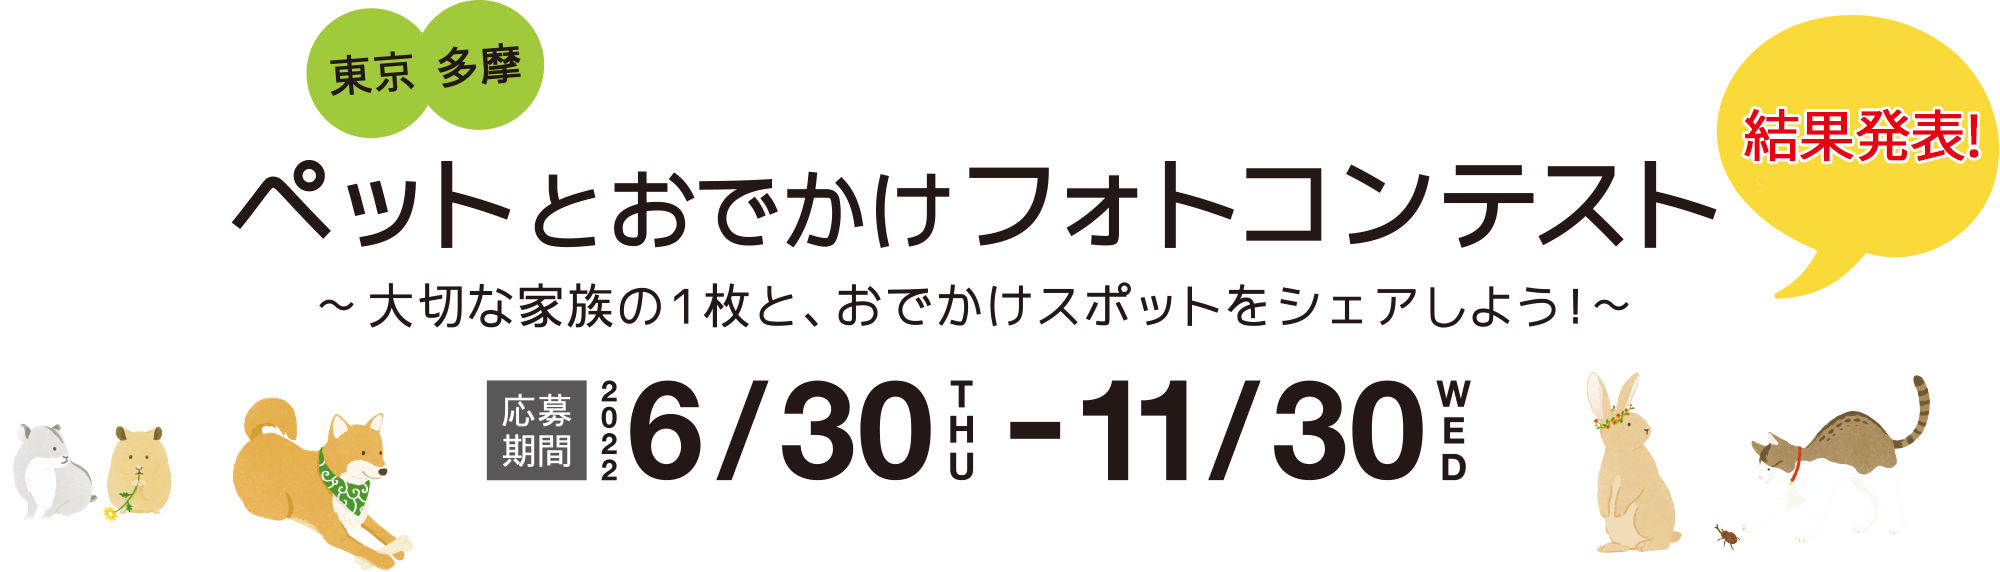 東京多摩 ペットとおでかけフォトコンテスト 〜大切な家族の1枚と、おでかけスポットをシェアしよう！〜 応募期間 2022 6/30 WED〜11/30 WED